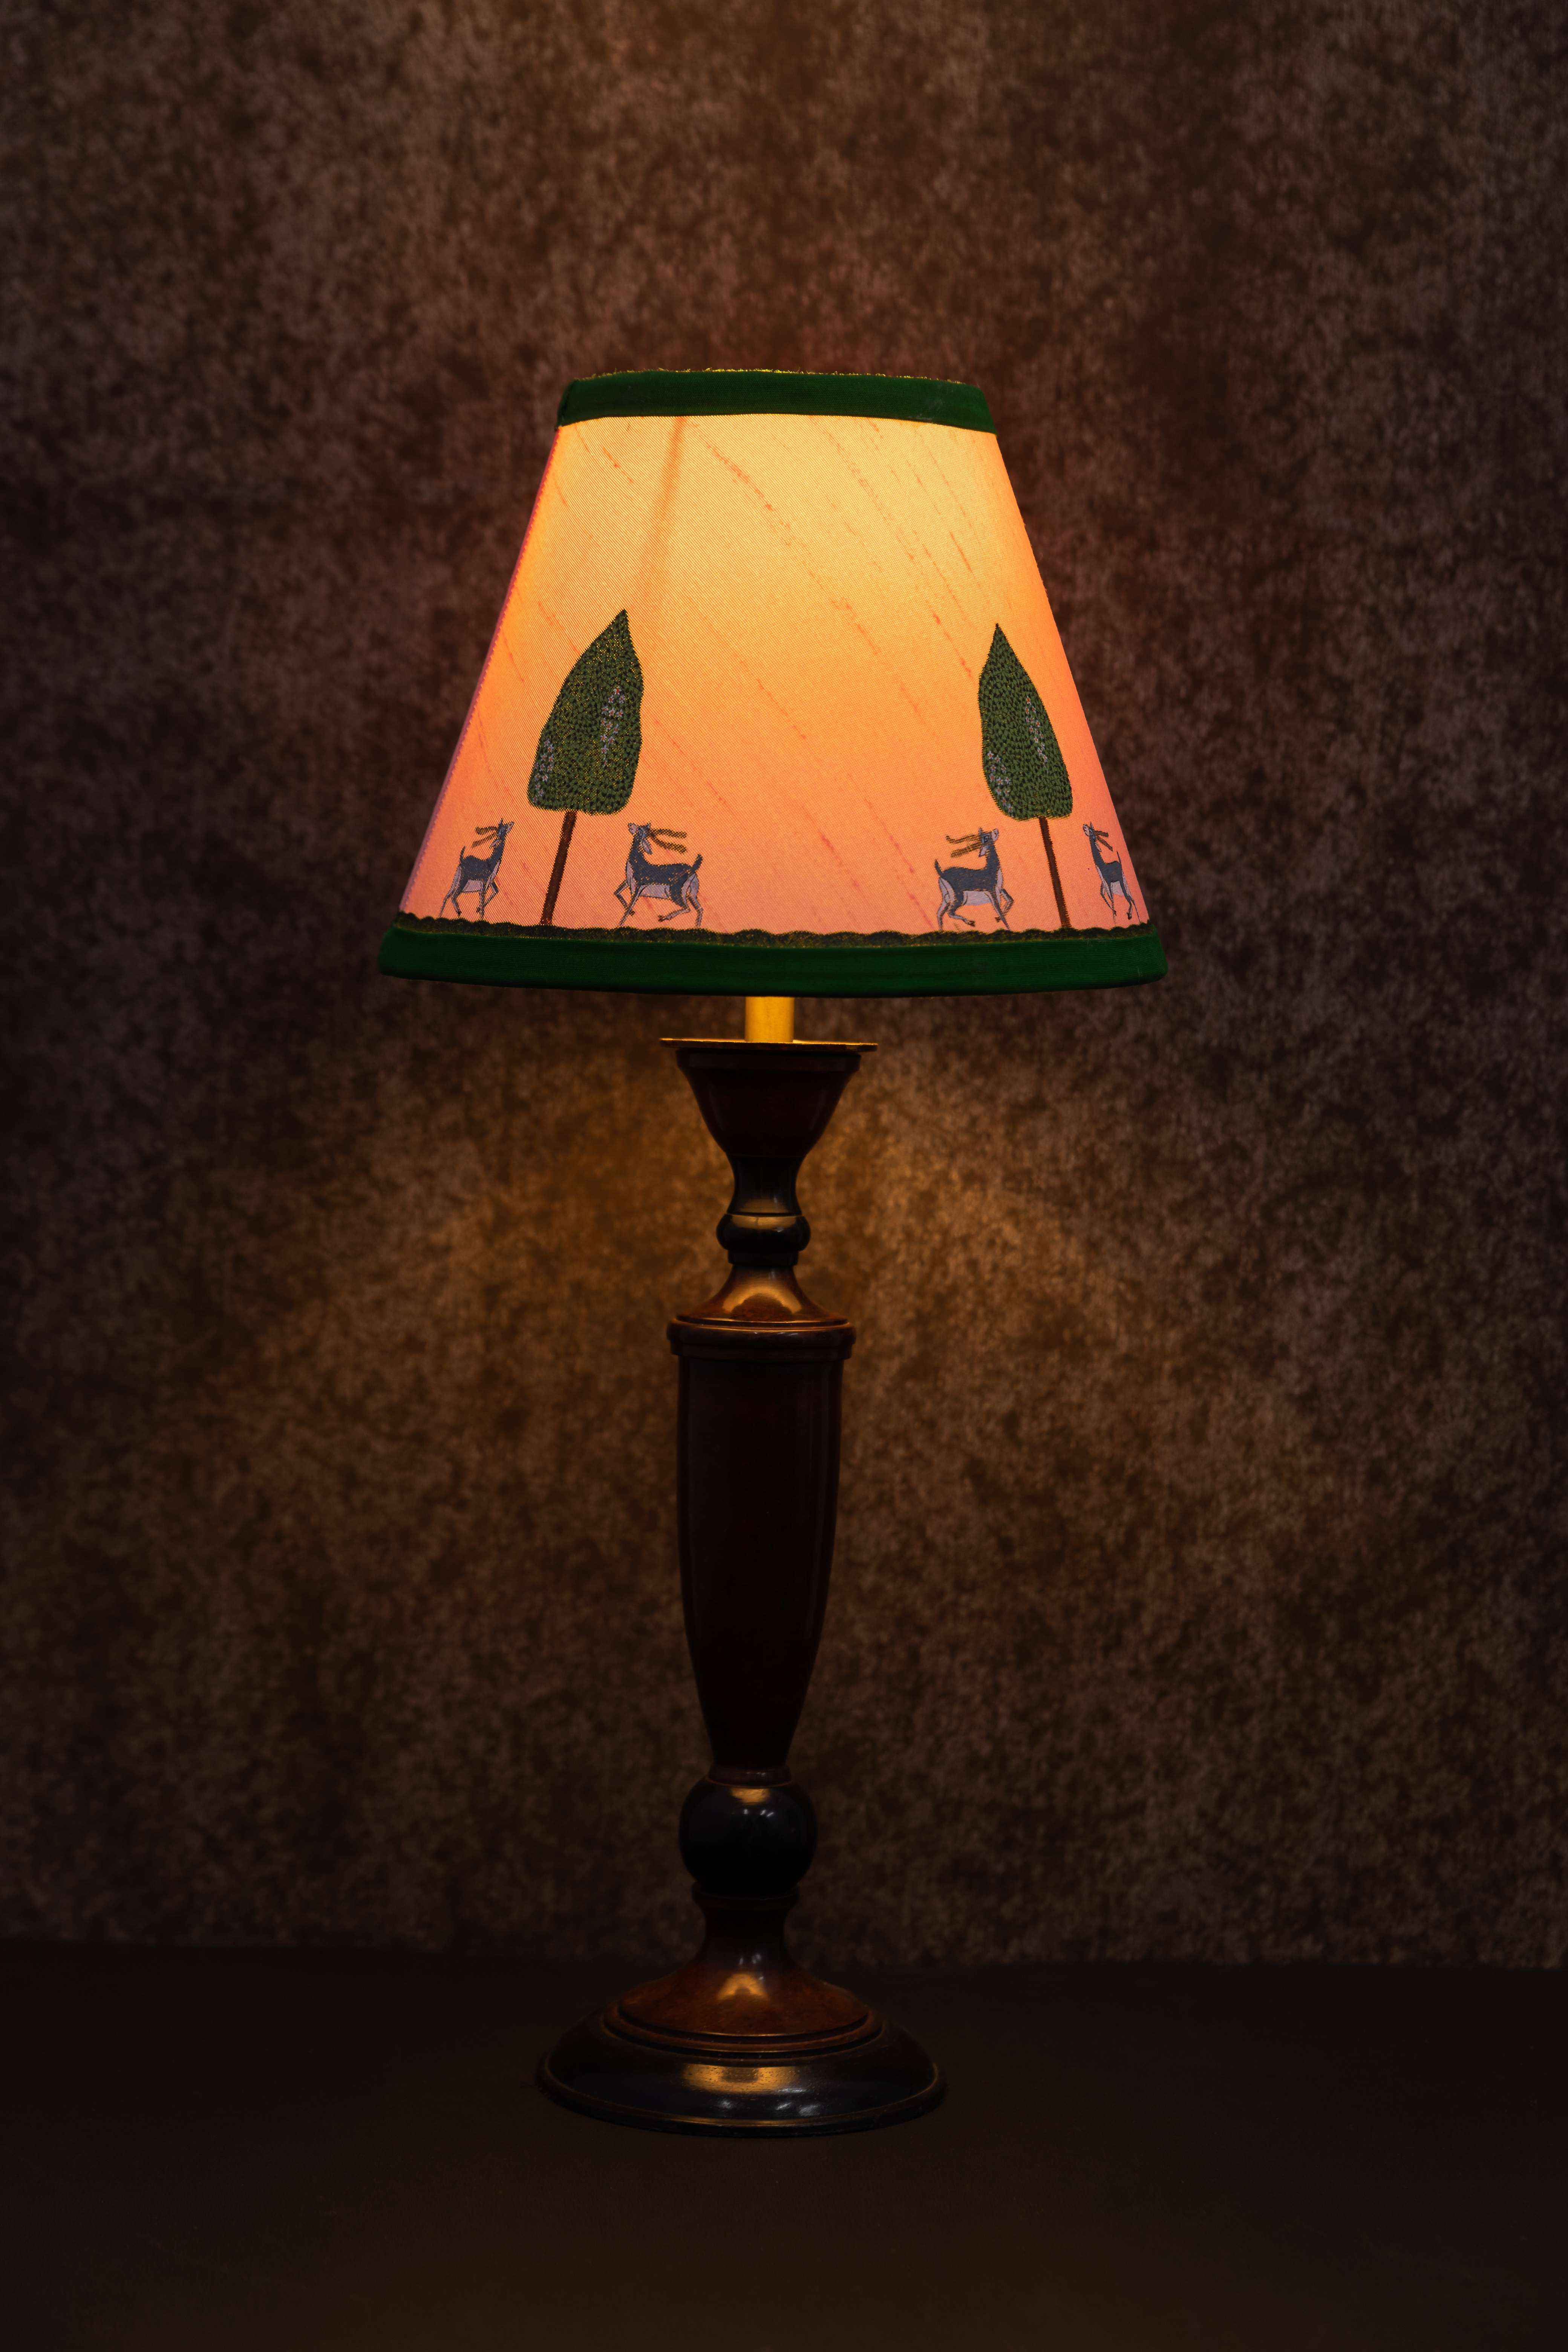 Lamp Shades